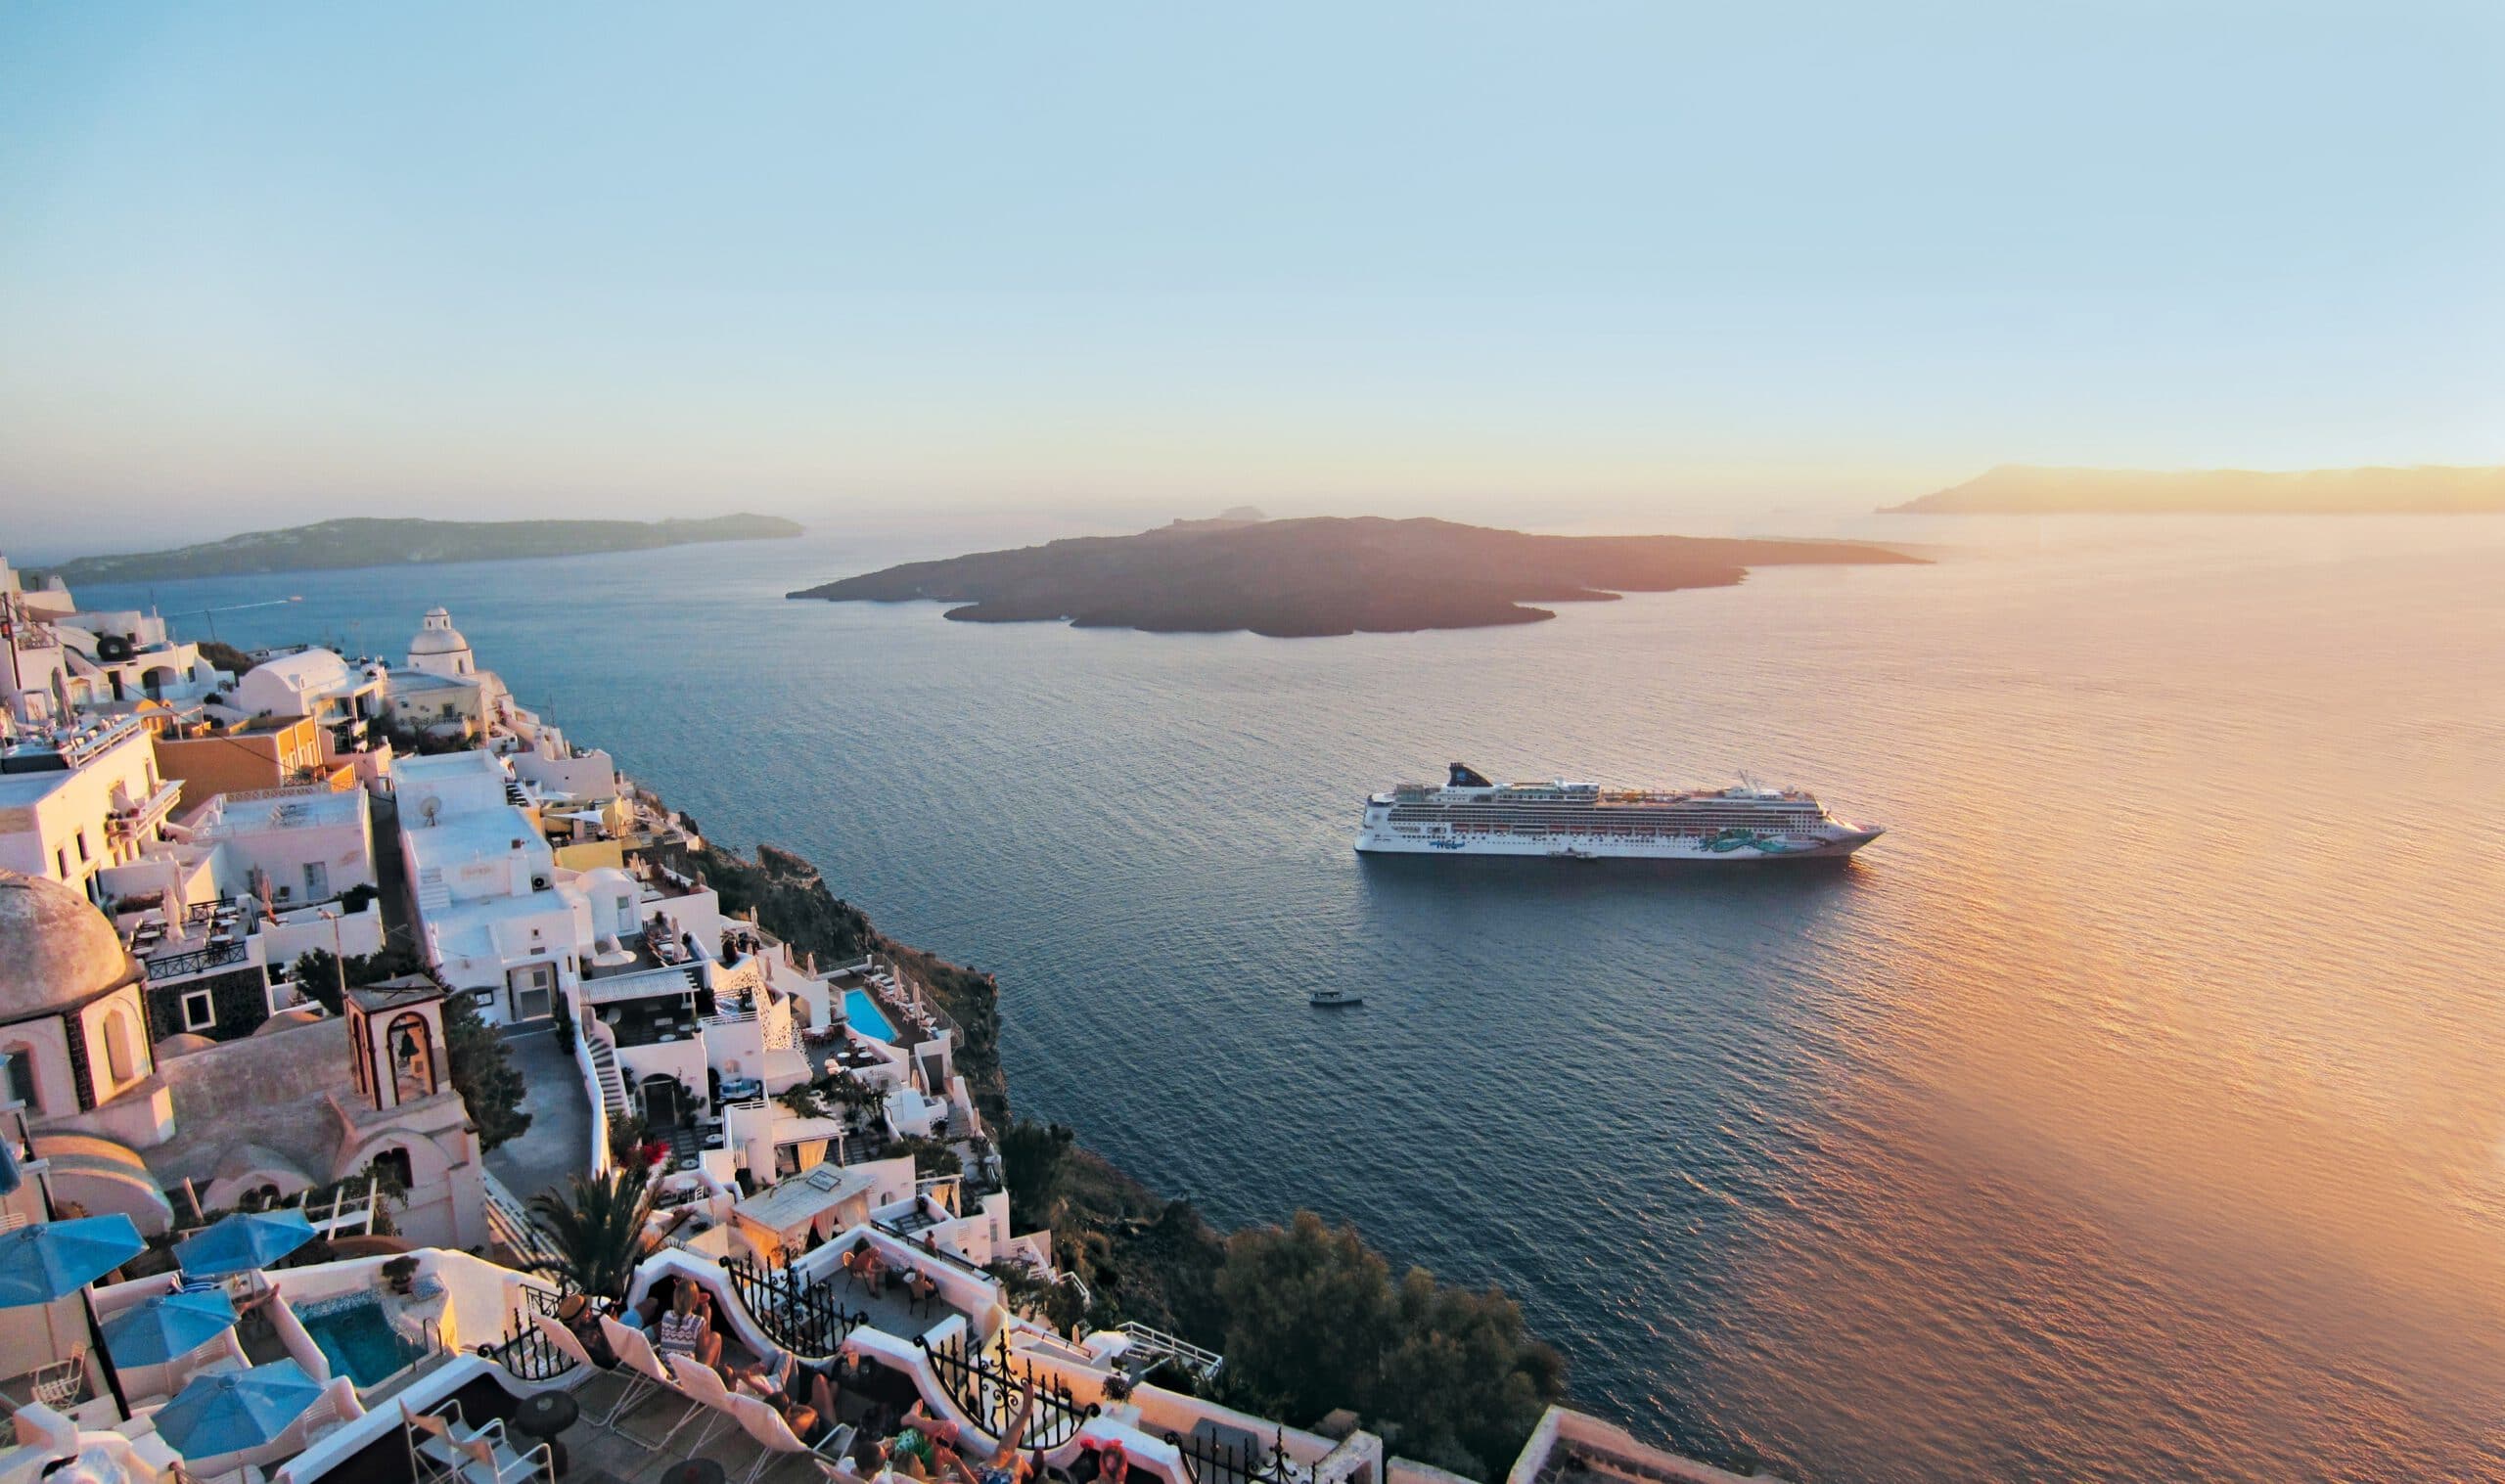 Nach 500 Tagen Kreuzfahrtpause: Norwegian Cruise Line nimmt Kreuzfahrtbetrieb wieder auf